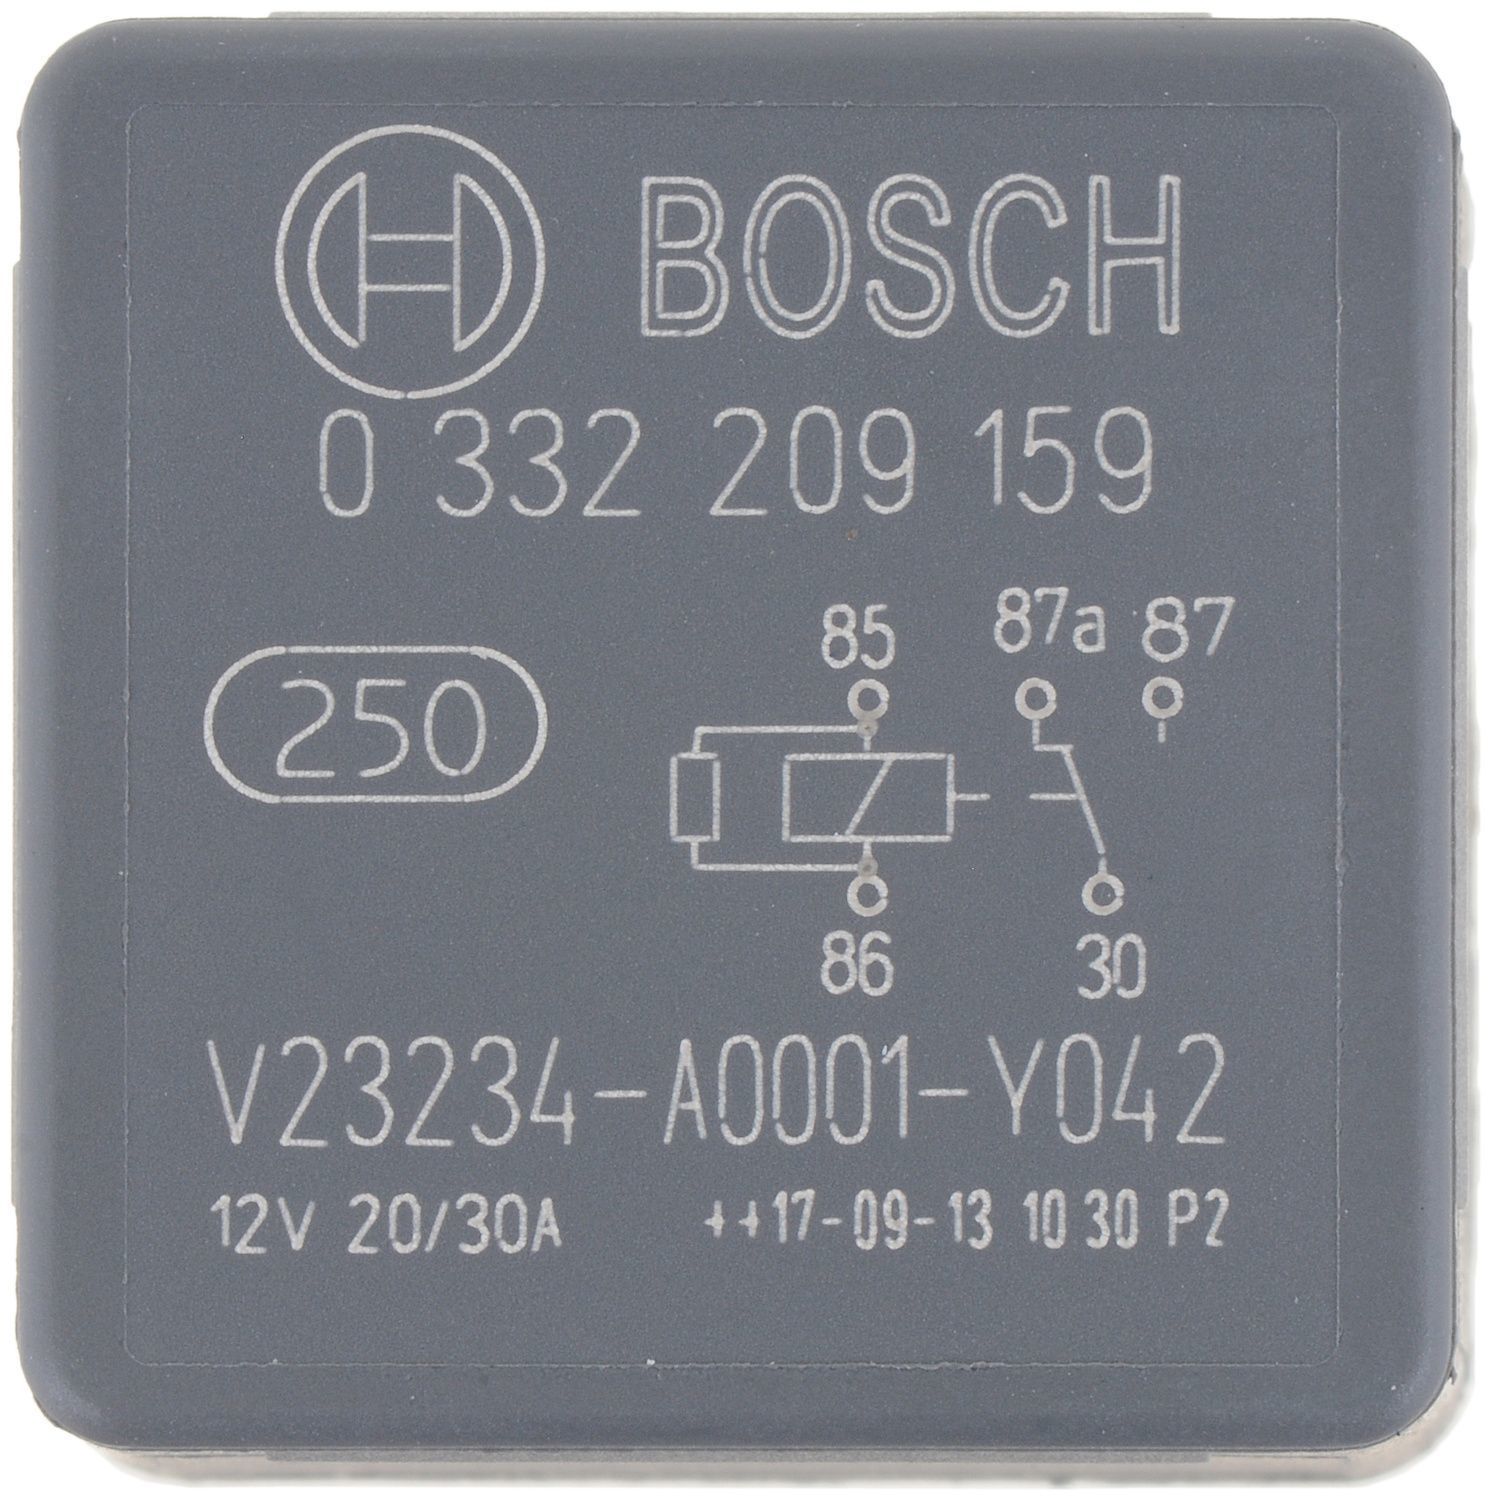 BOSCH - Fuel Pump Relay - BOS 0332209159